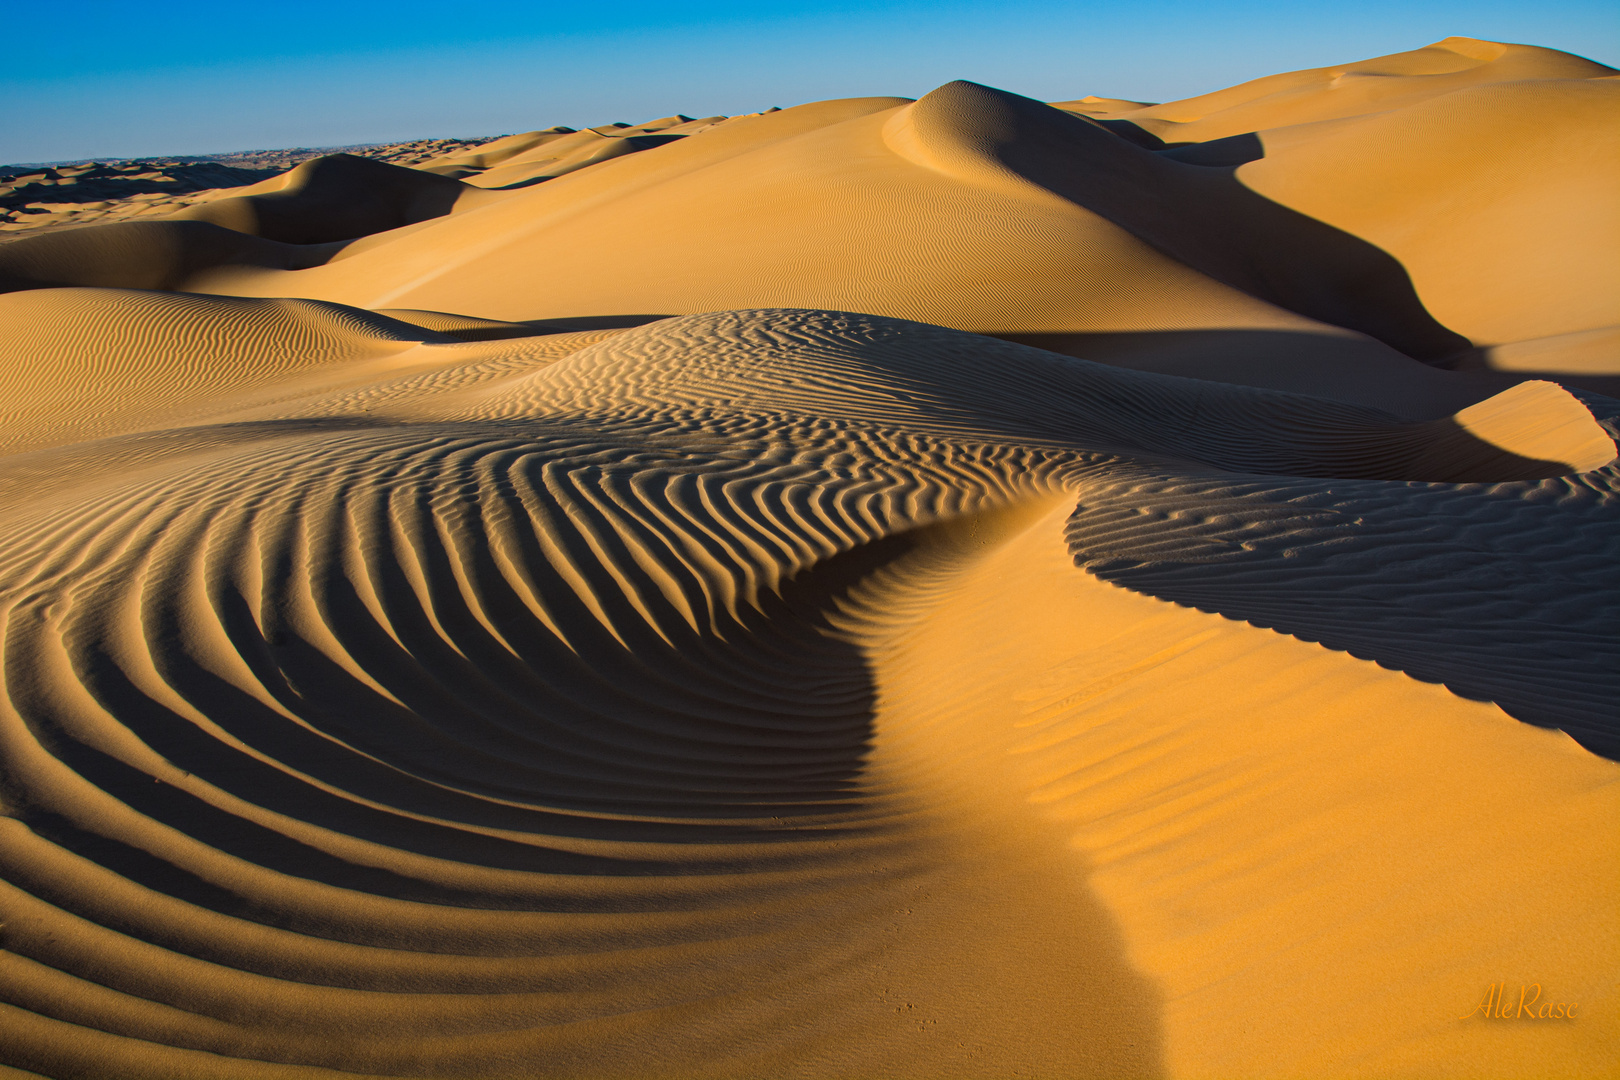 The geometry of desert